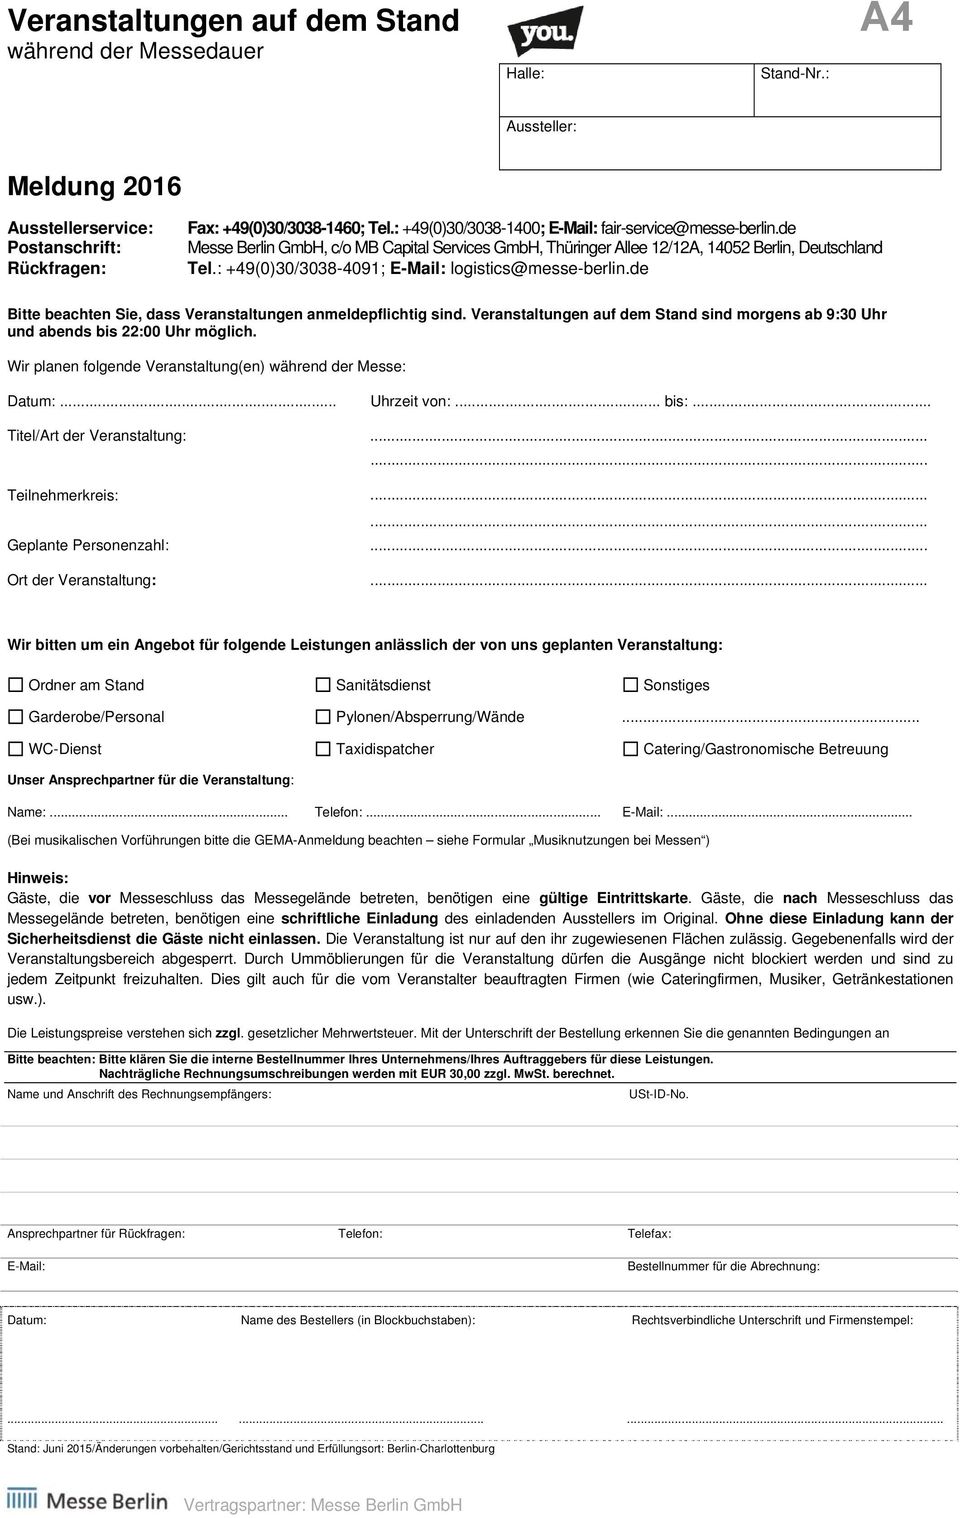 : +49(0)30/3038-4091; E-Mail: logistics@messe-berlin.de Bitte beachten Sie, dass Veranstaltungen anmeldepflichtig sind.